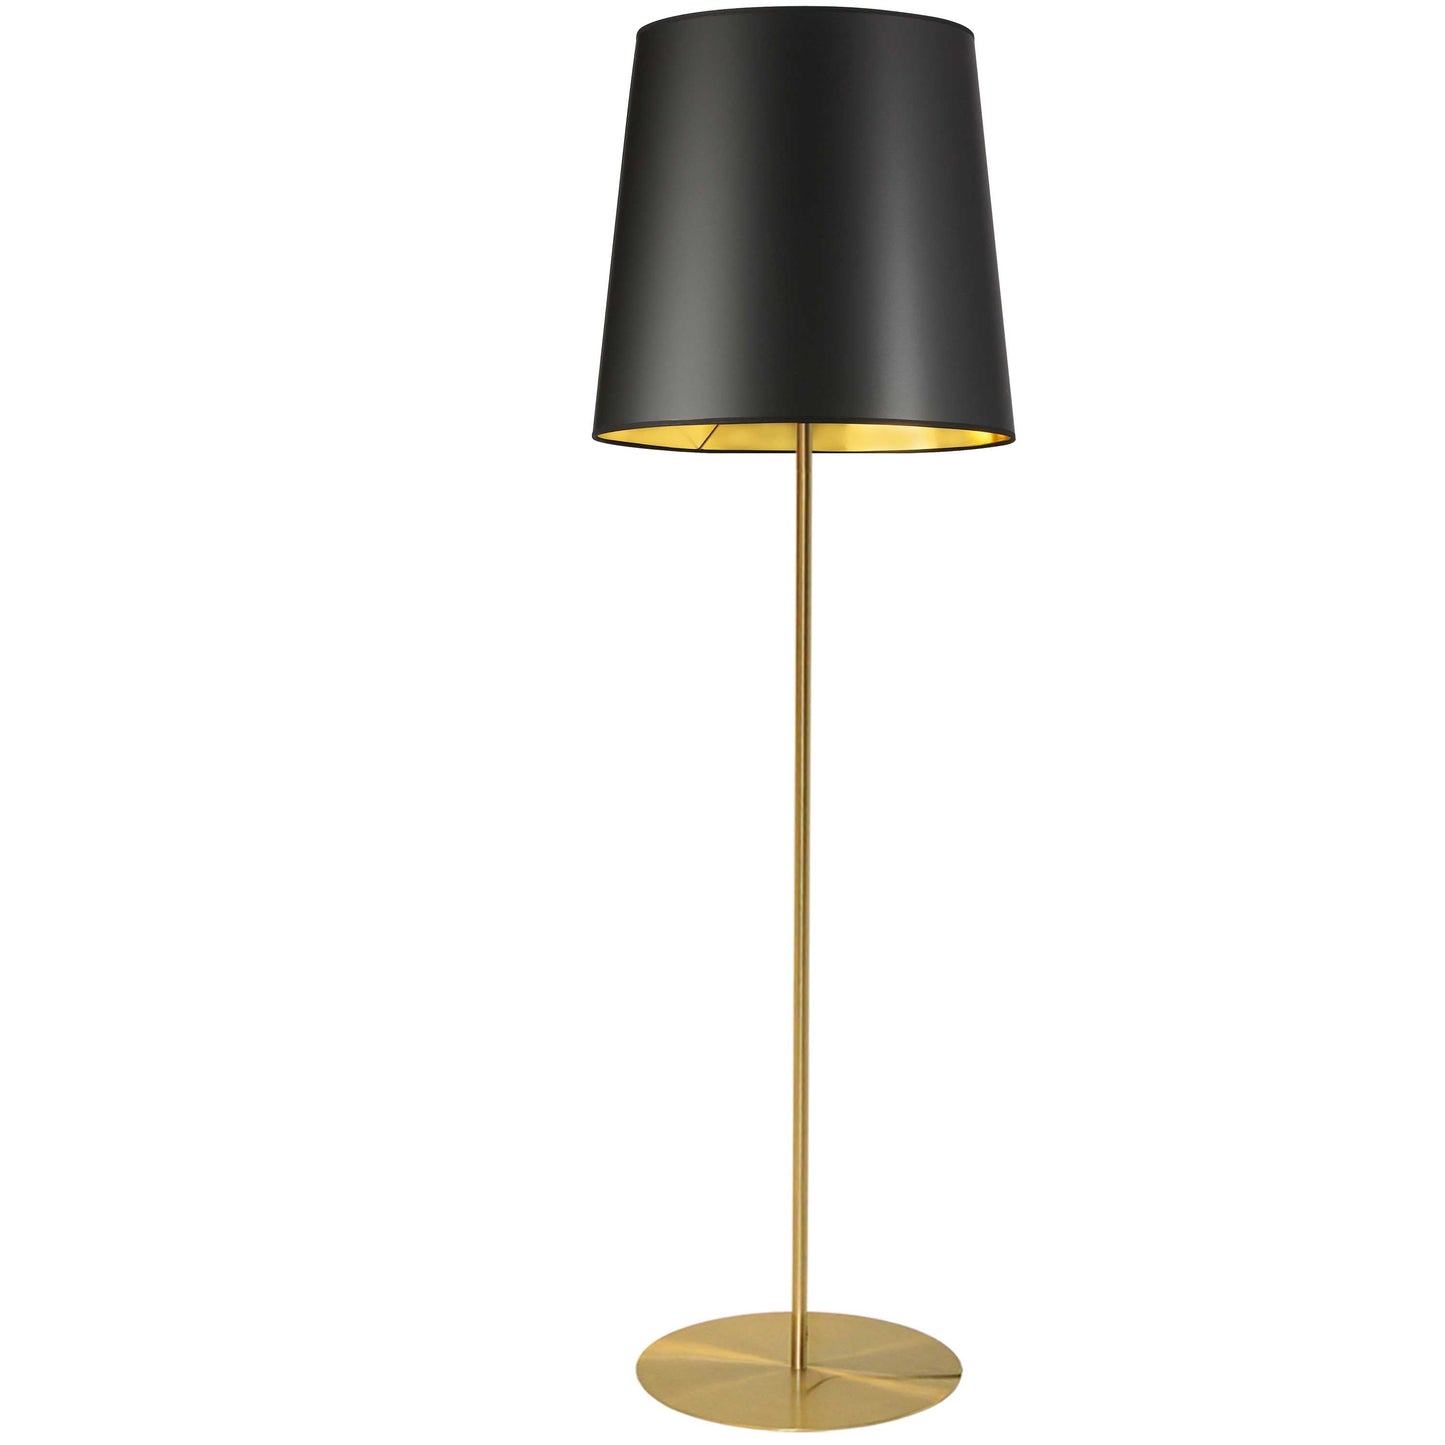 Dainolite 1 Light Aged Brass Floor Lamp w/ Black/Gold Drum Shade